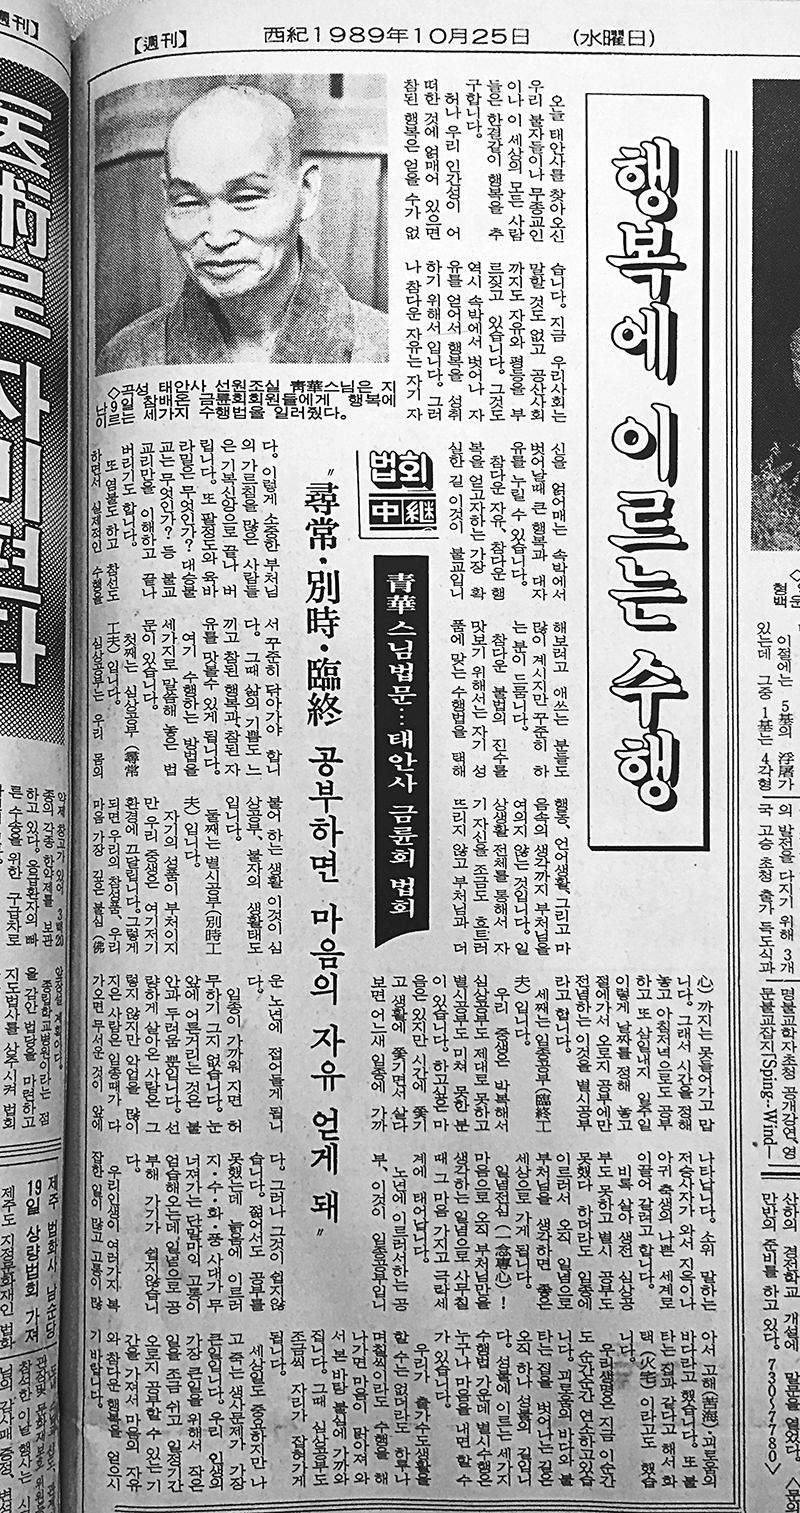 불교신문 1272호(1989년10월25일자) 6면에 실린 청화스님 태안사 금륜회 법회 법문.